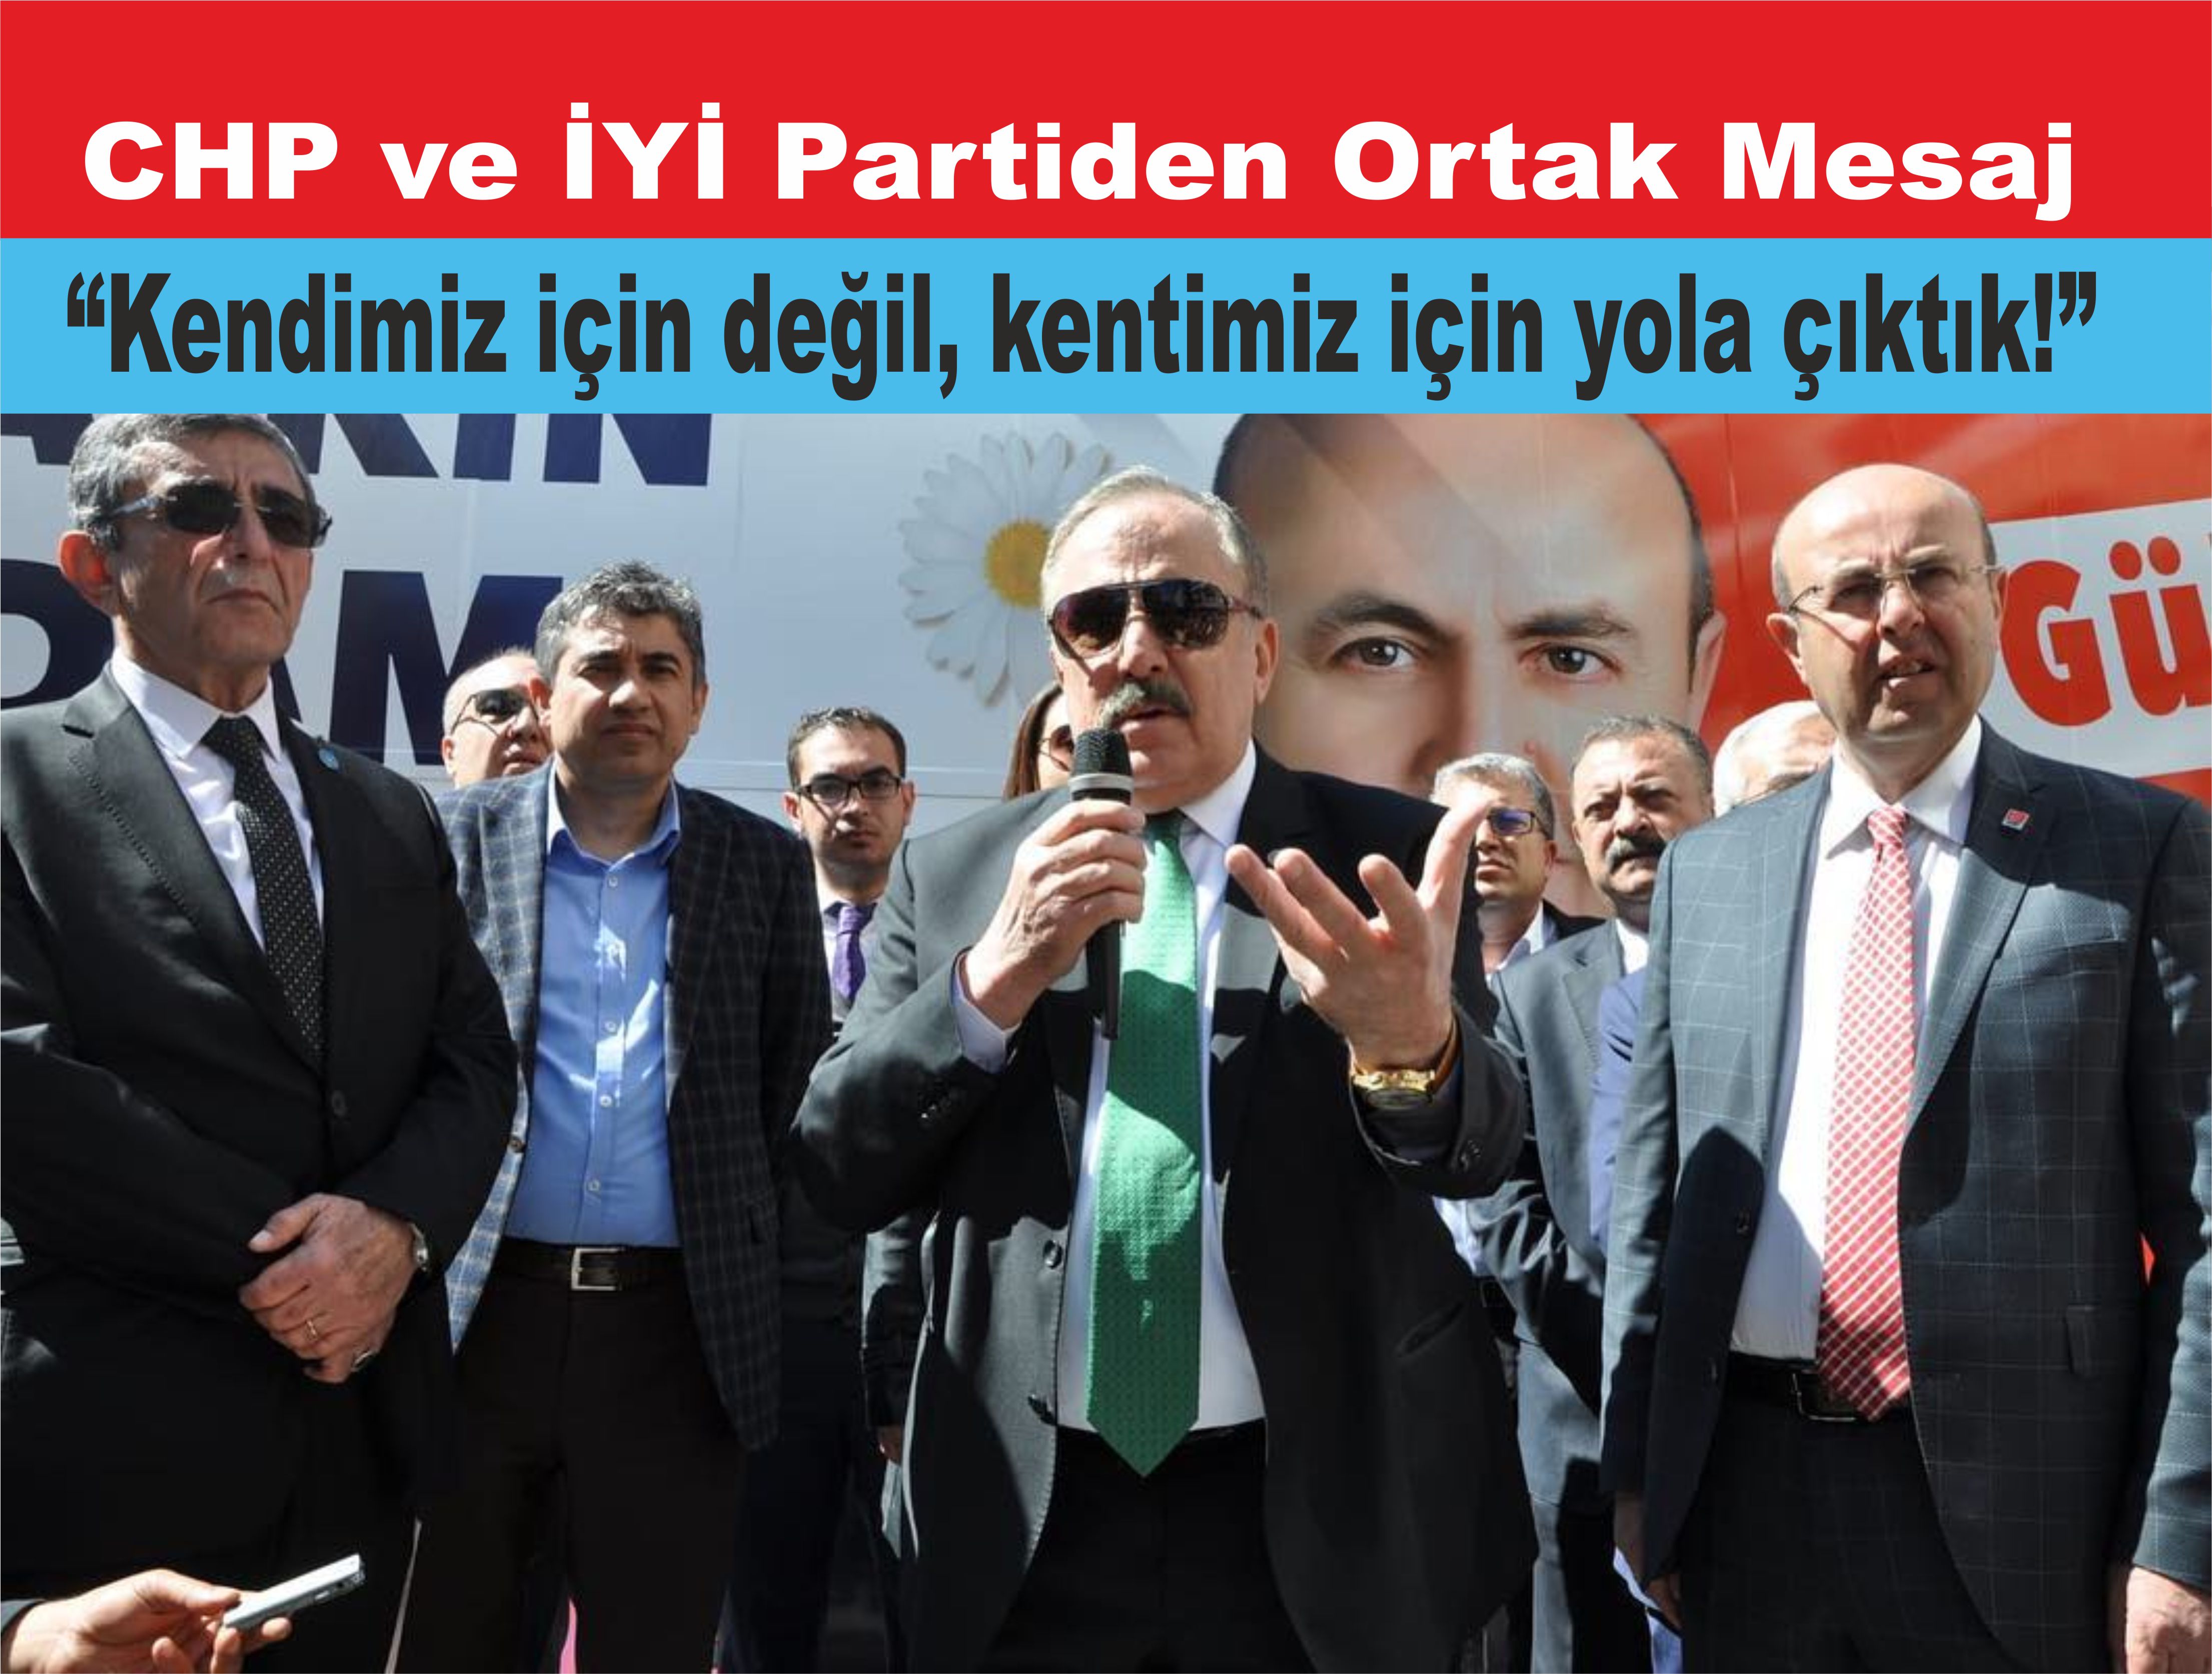 Ensarioğlu: Devletin kurumları olur, Devletin partisi olmaz